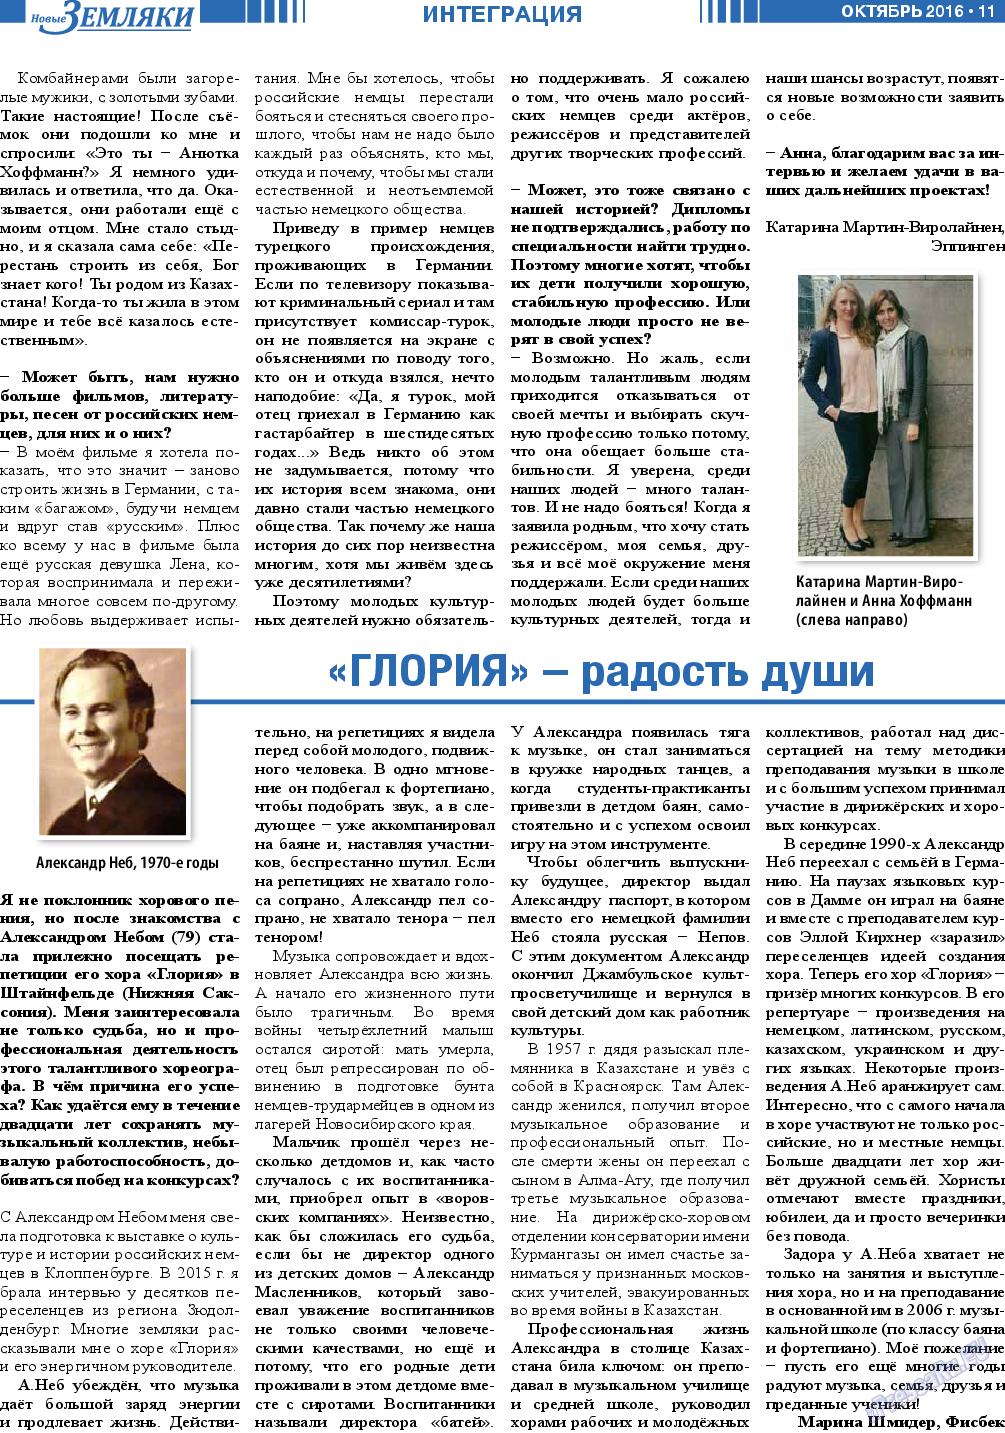 Новые Земляки (газета). 2016 год, номер 10, стр. 11